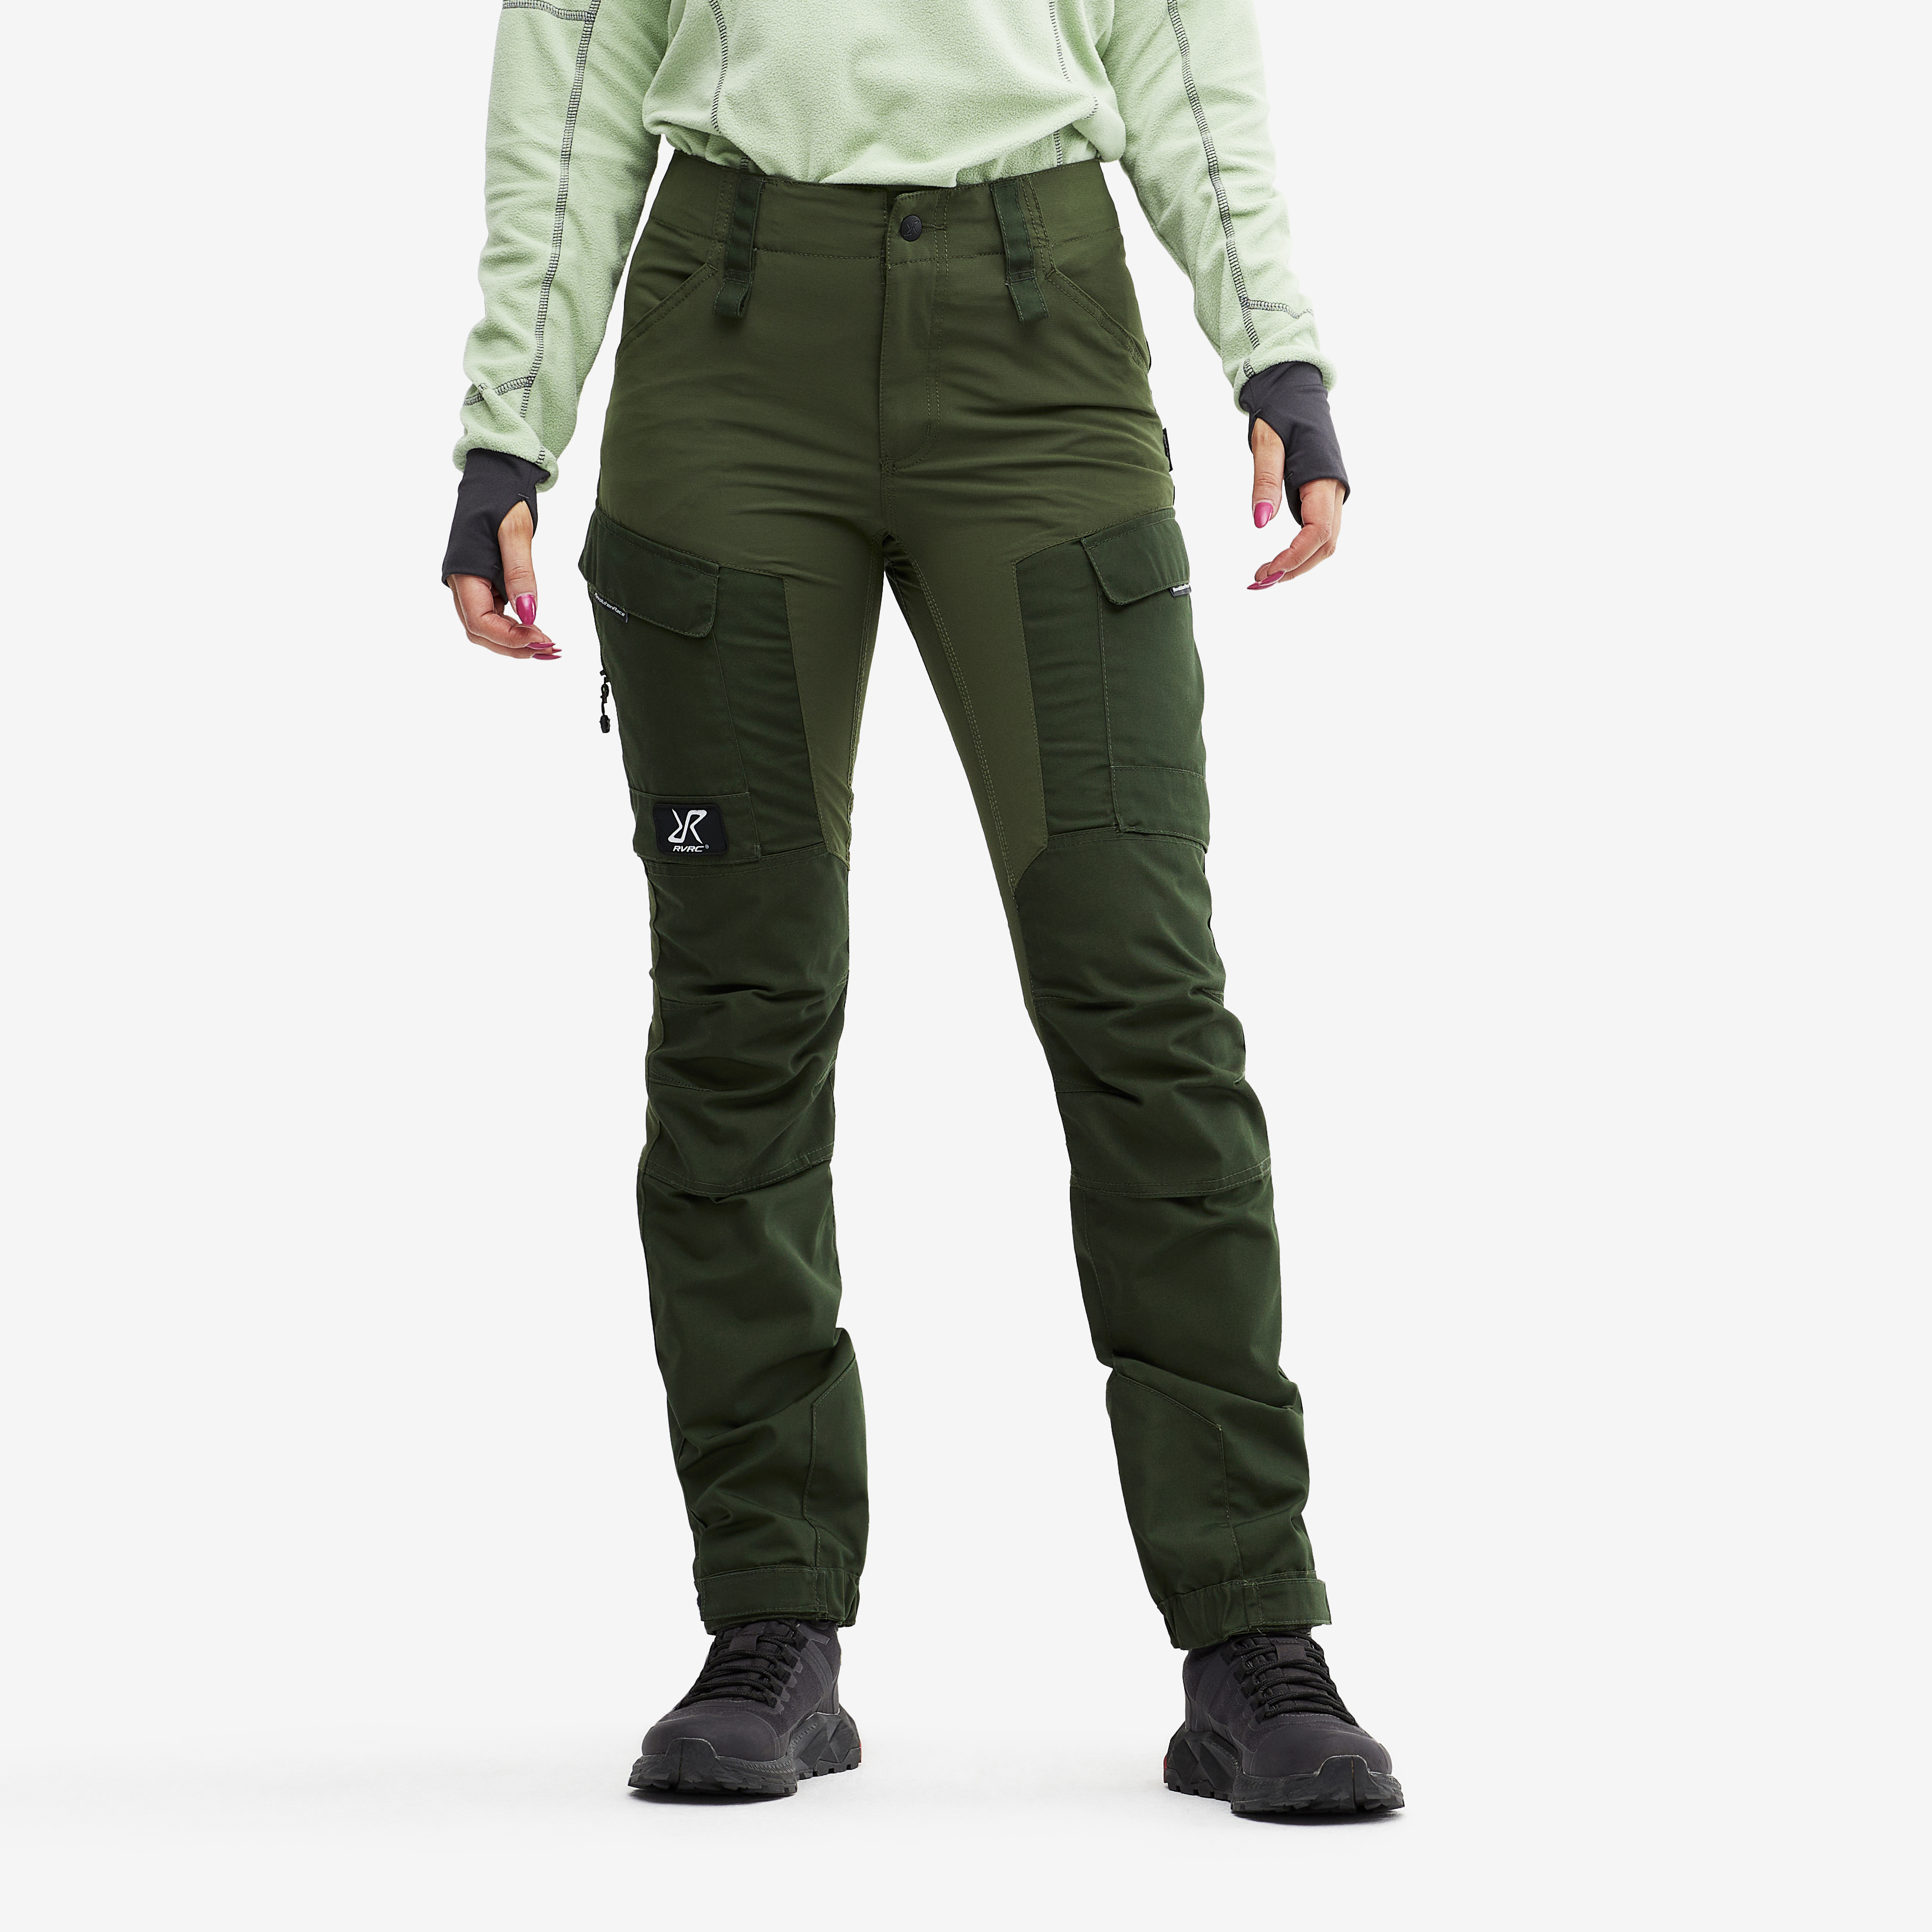 RVRC GP spodnie outdoorowe damskie zielony